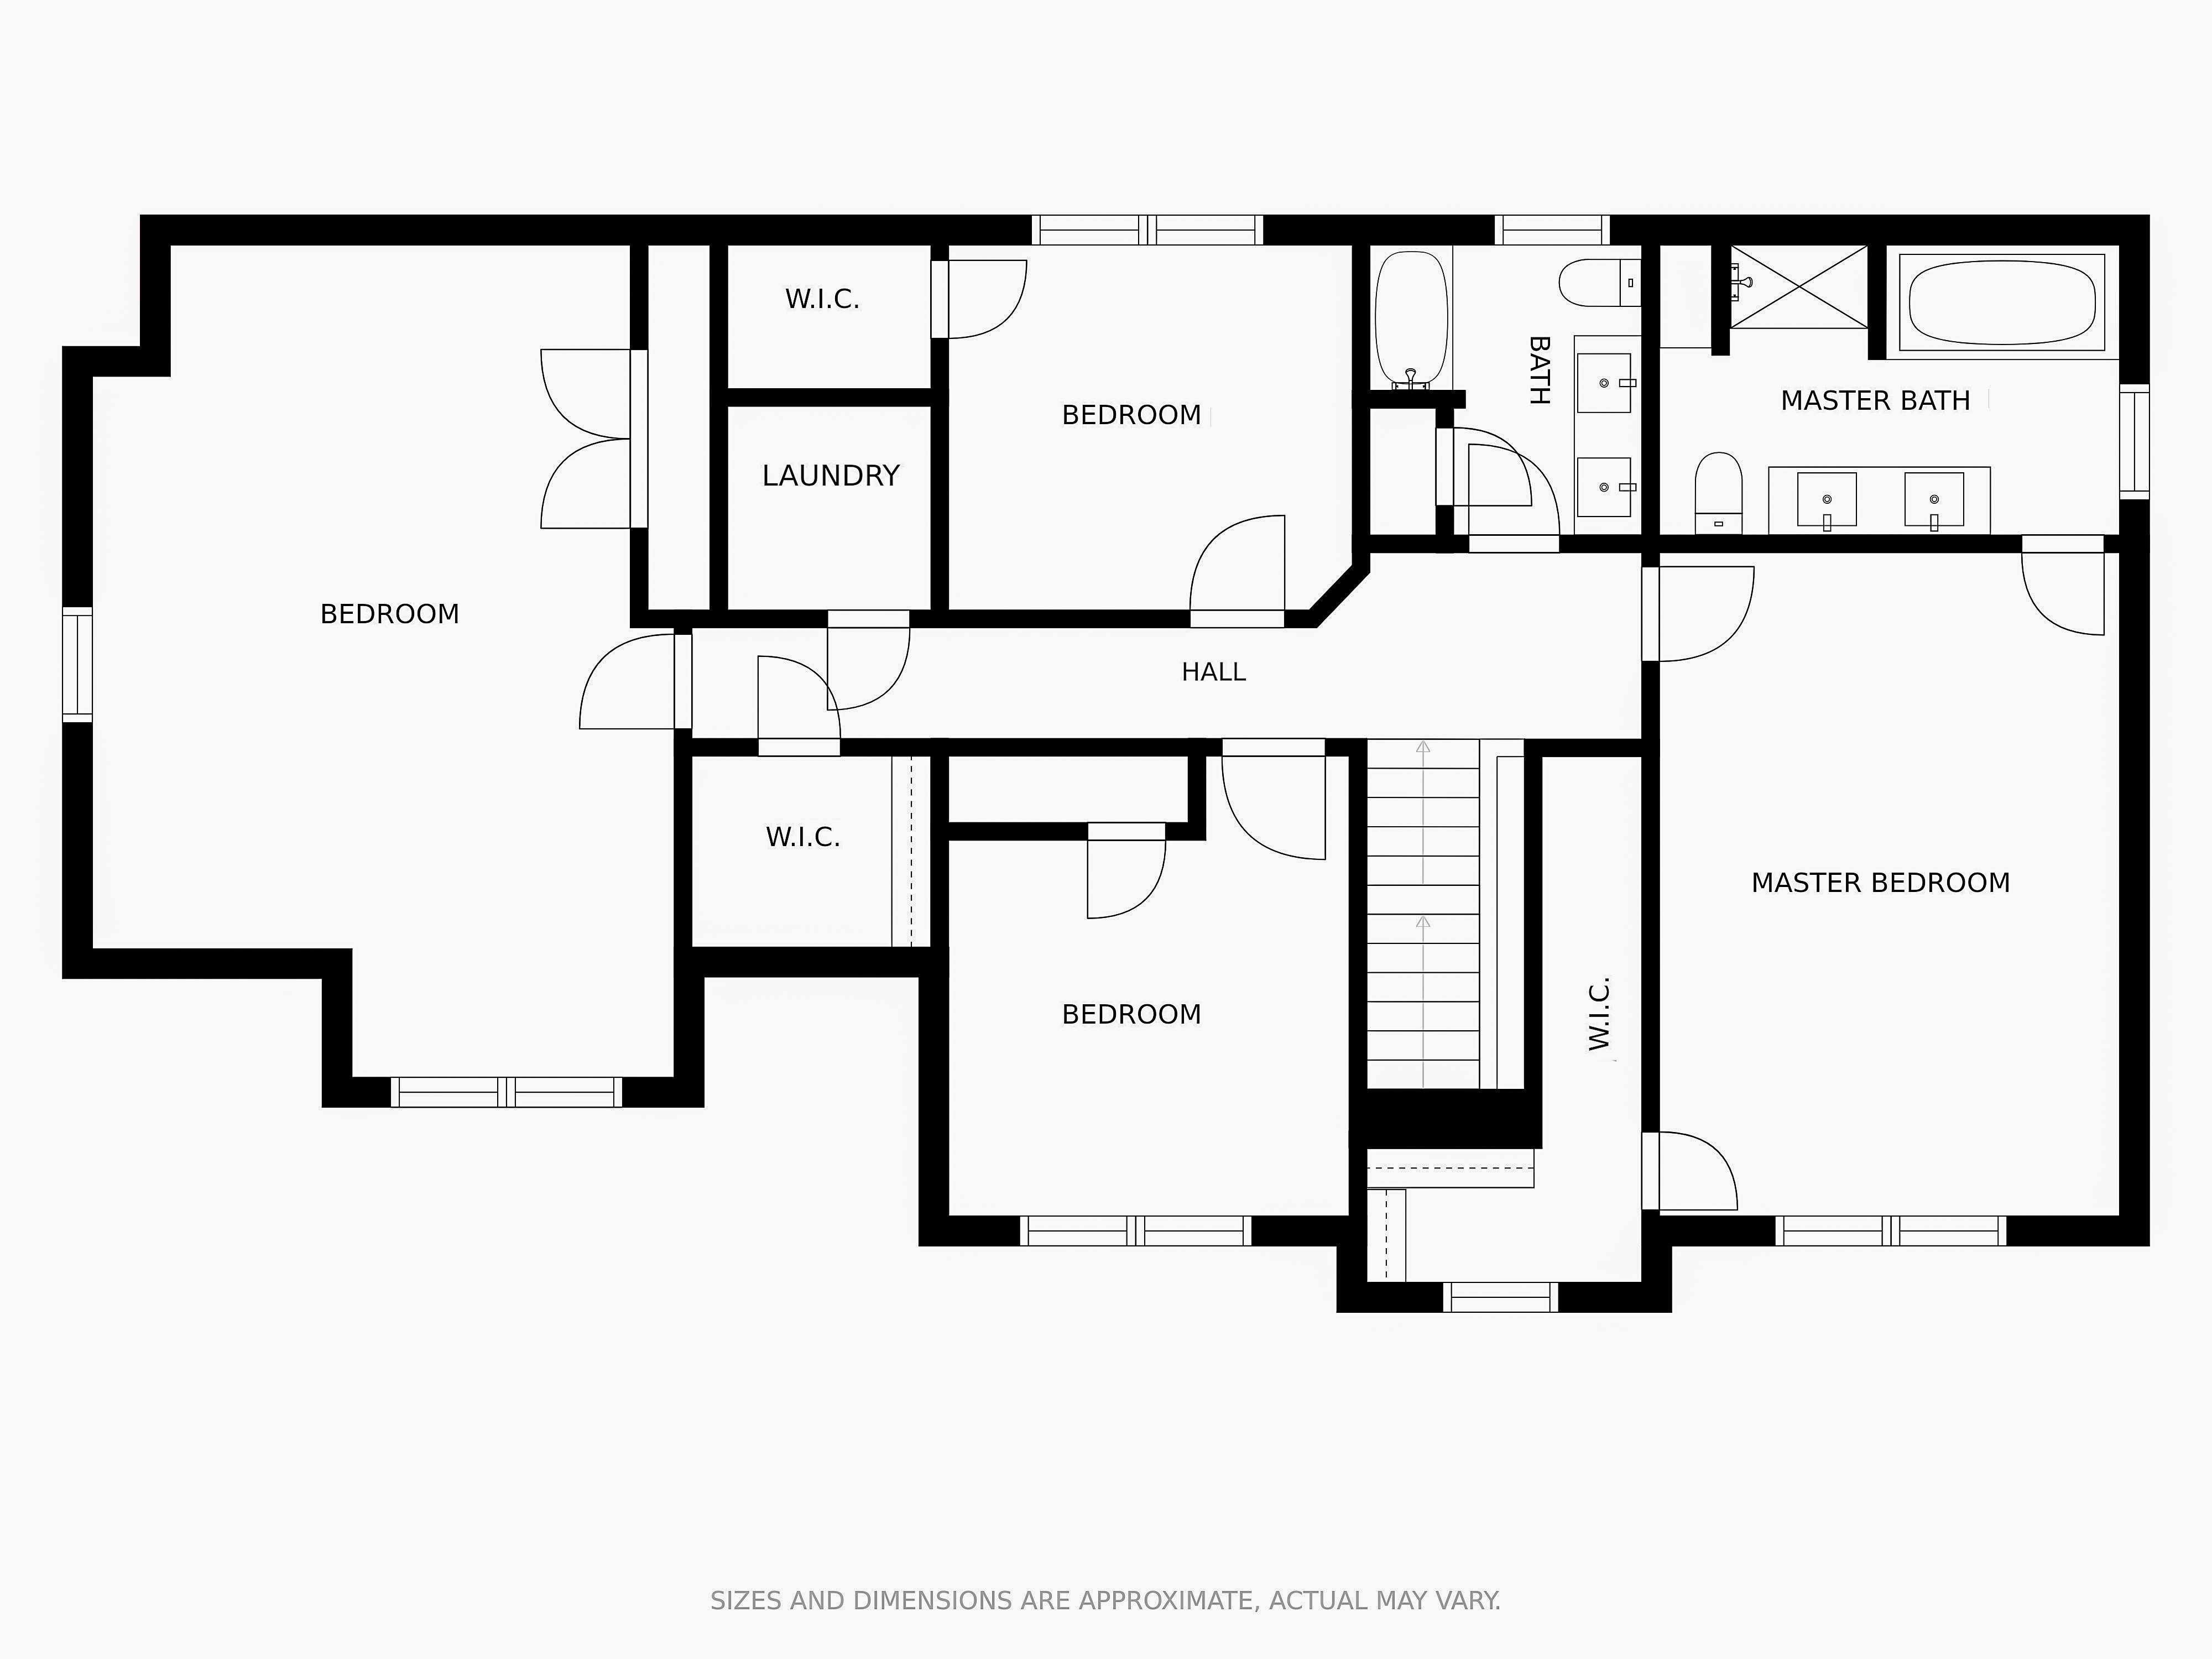 451-46-mort-vining-floor-plans-3.jpg